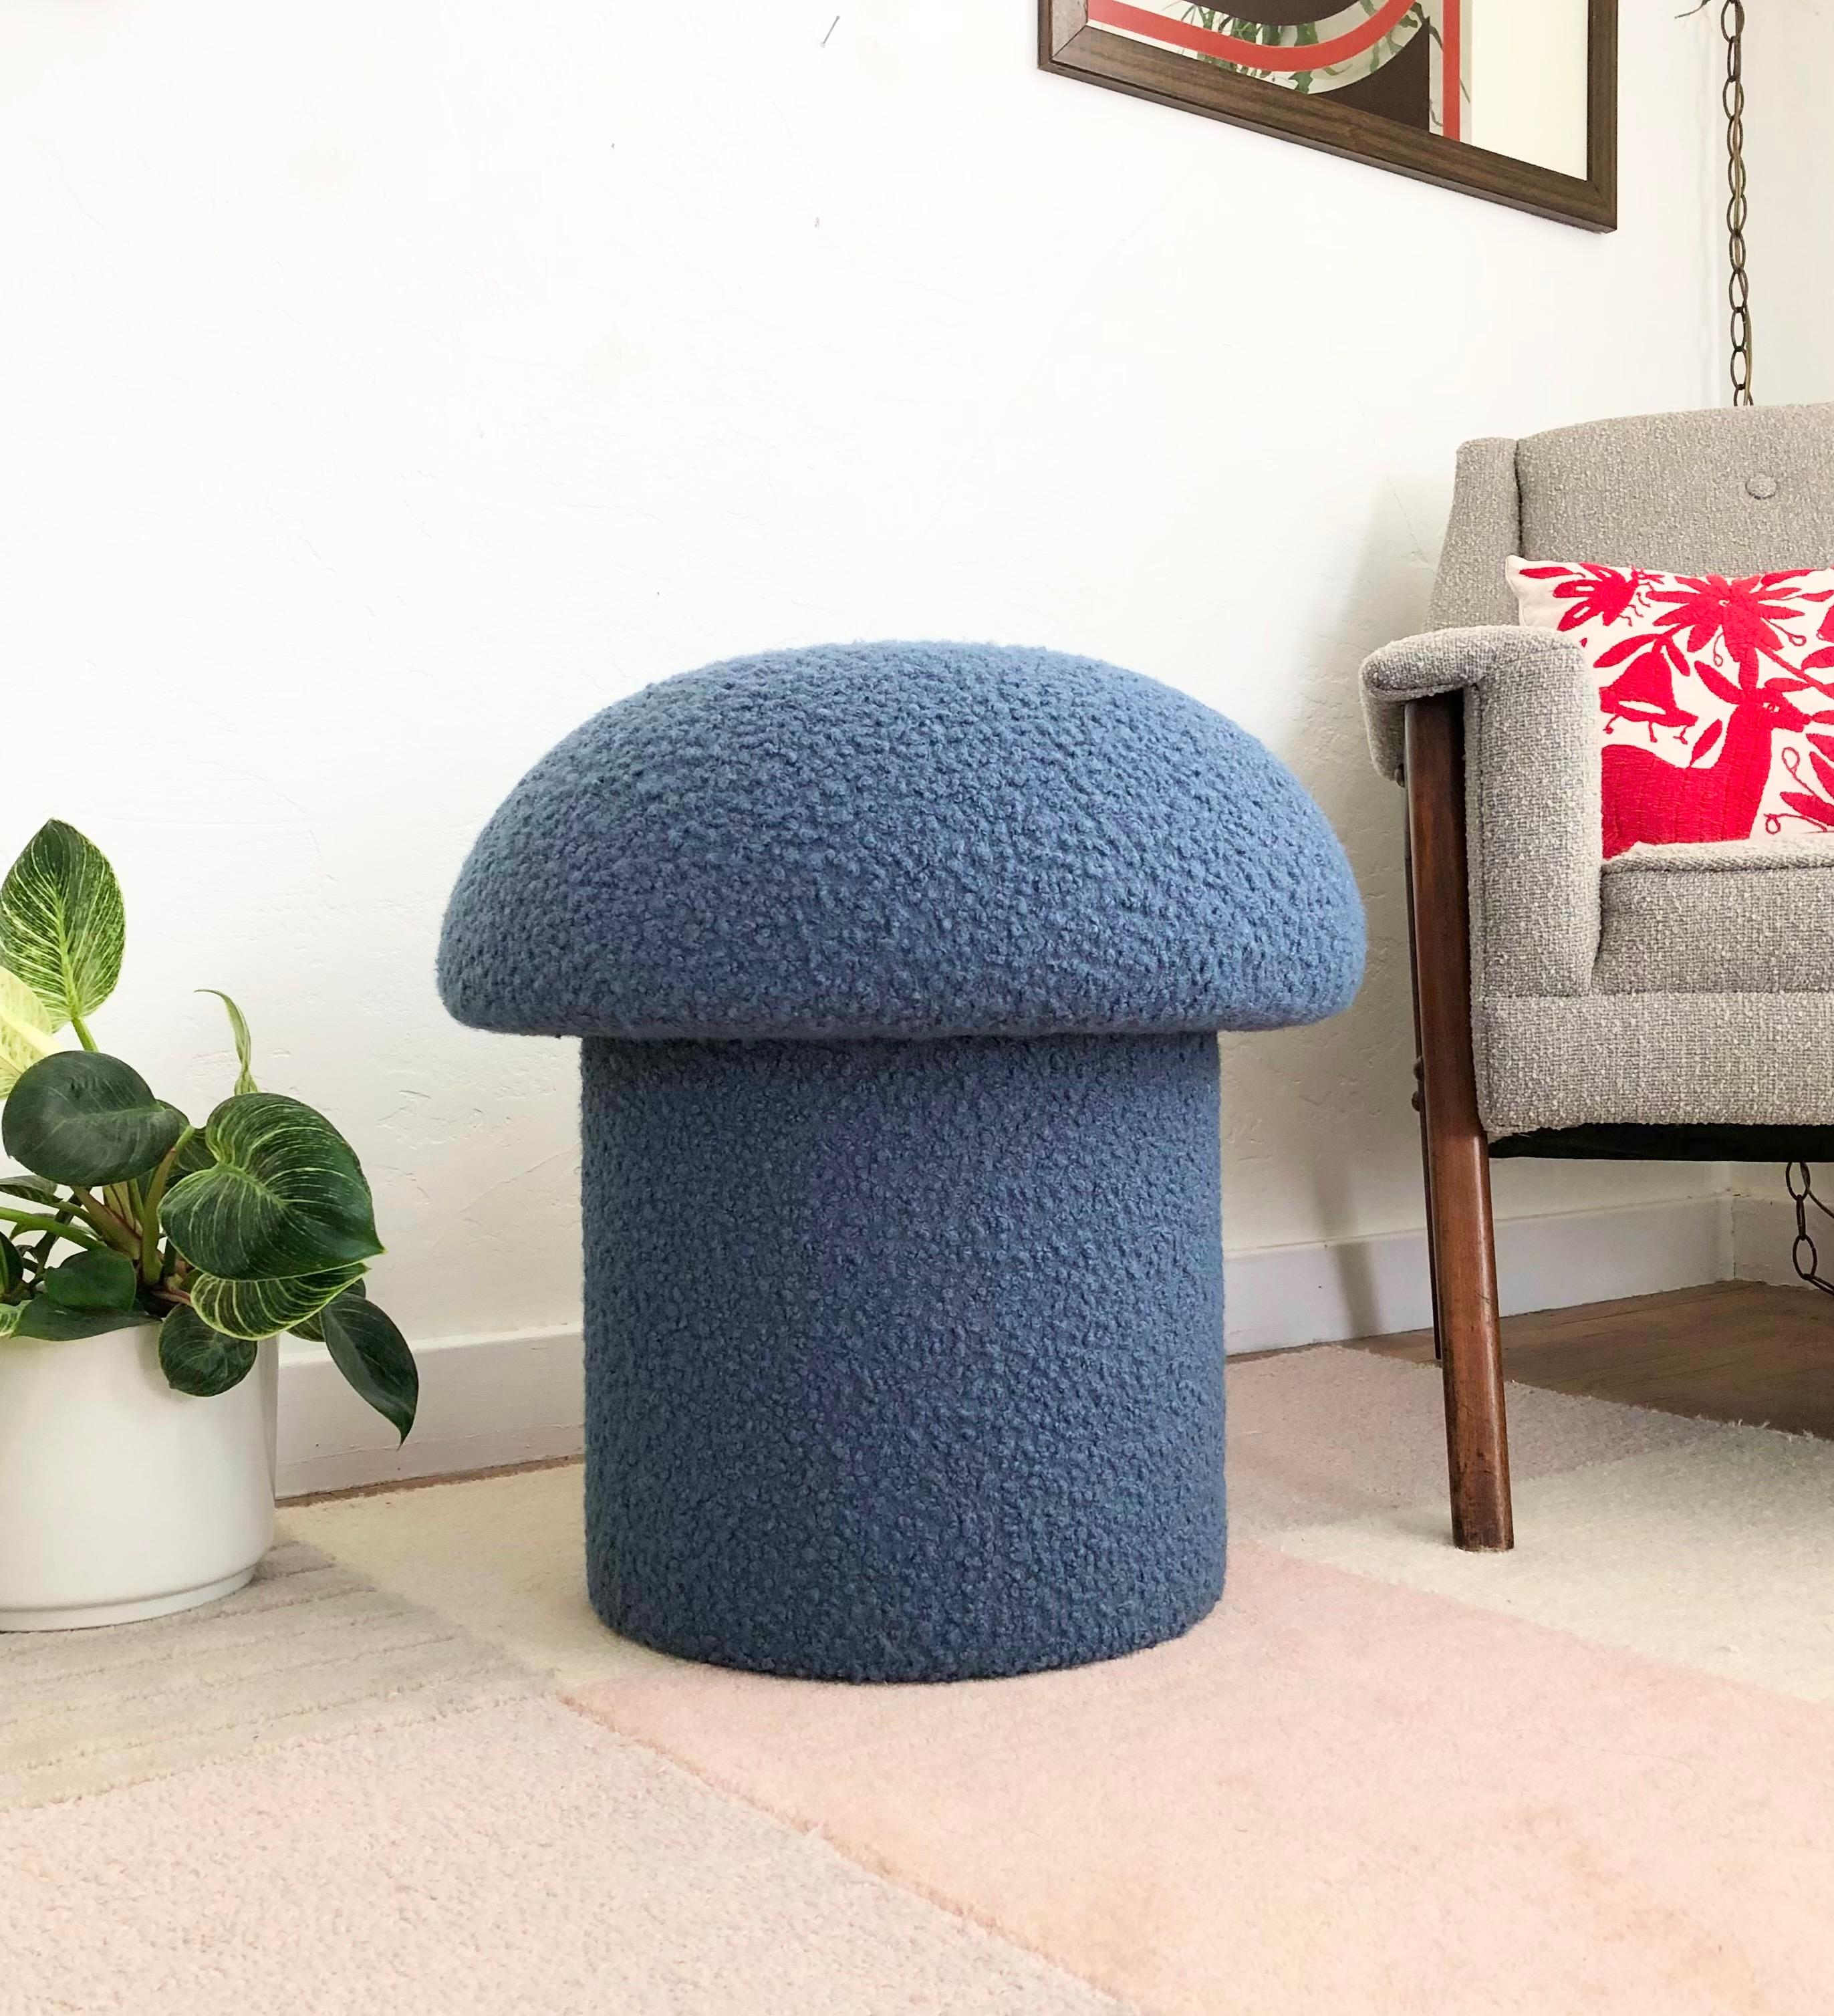 Un ottoman en forme de champignon fait à la main, tapissé d'un tissu bouclé de couleur bleu denim. Parfait pour être utilisé comme pouf ou comme siège supplémentaire d'appoint. Un siège coussiné confortable et une pièce d'accentuation